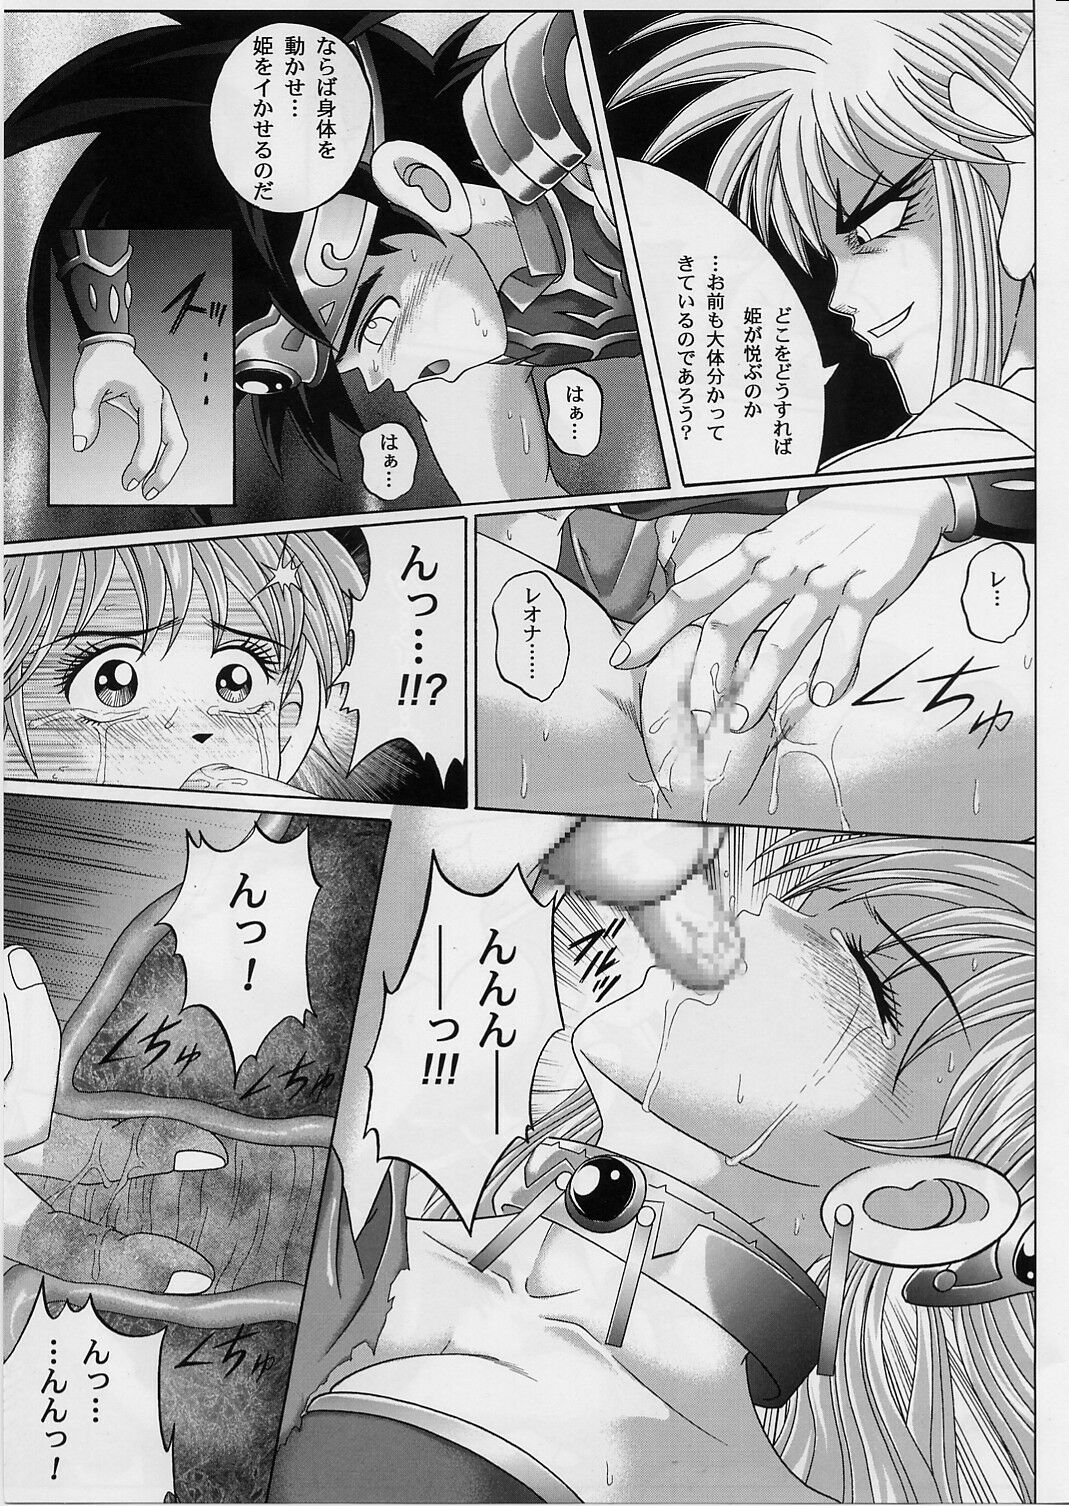 [Cyclone (Izumi, Reizei)] DIME ALLIANCE 2 (Dragon Quest Dai no Daibouken) page 34 full